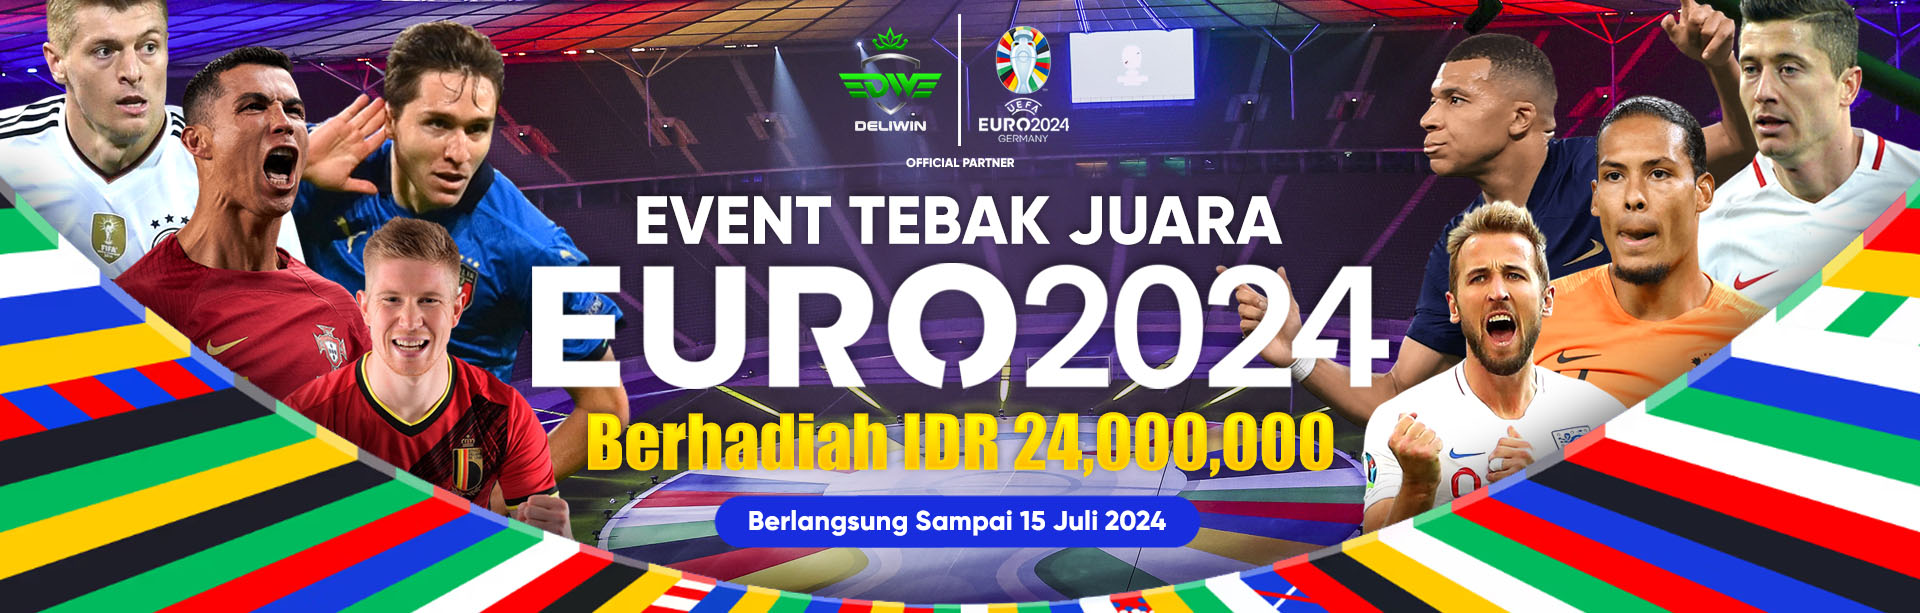 SPECIAL EVENT TEBAK JUARA EURO 2024